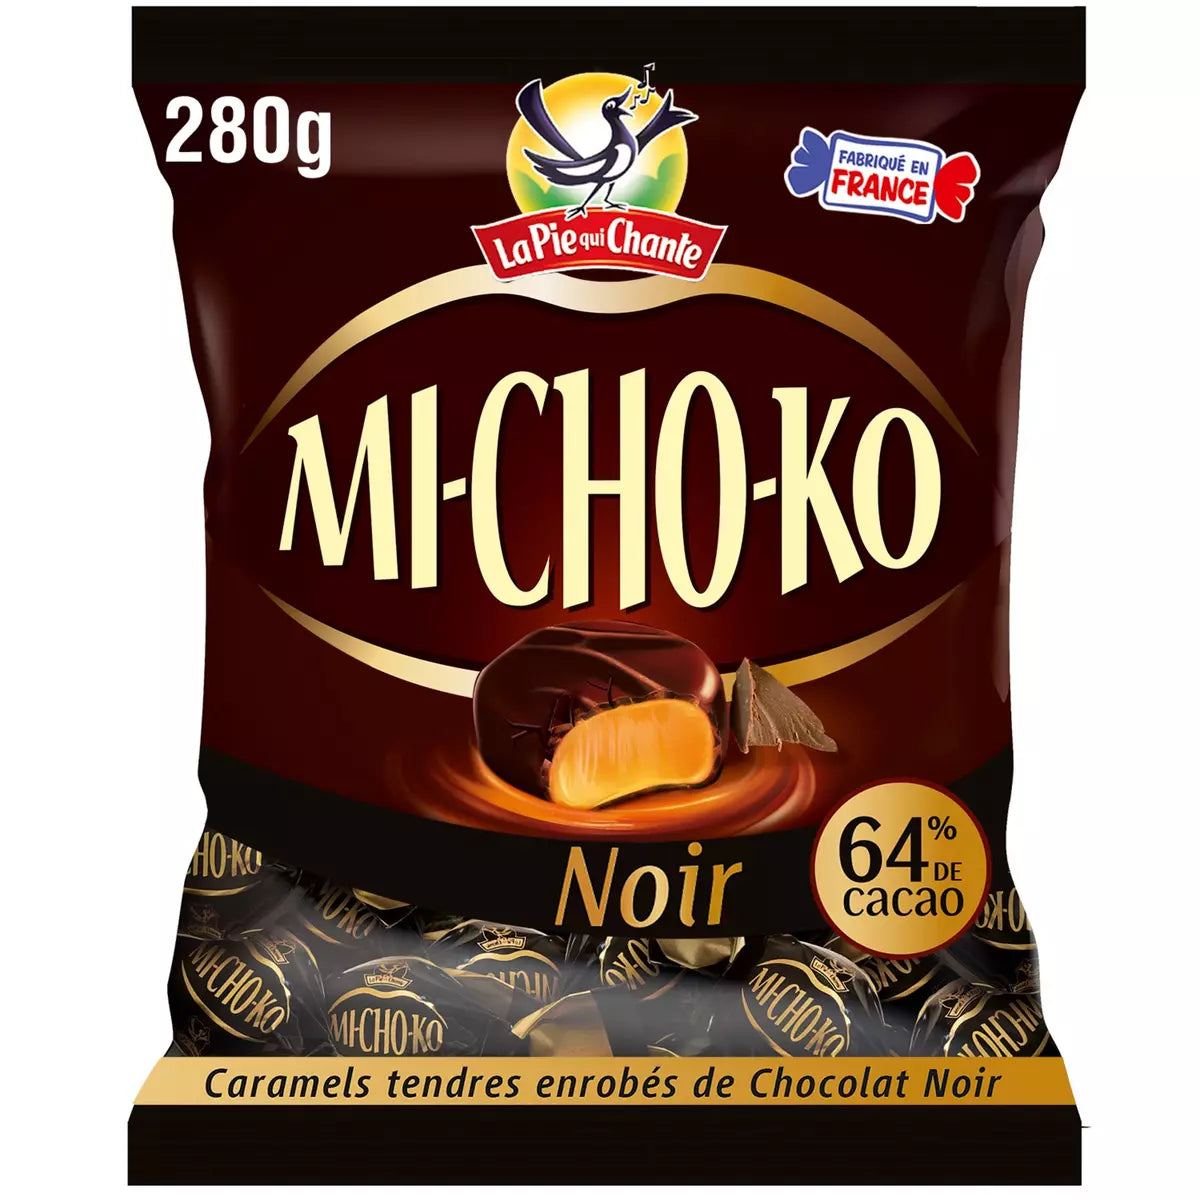 LA PIE QUI CHANTE Michoko Bonbons au caramel et au chocolat noir 199g -B134